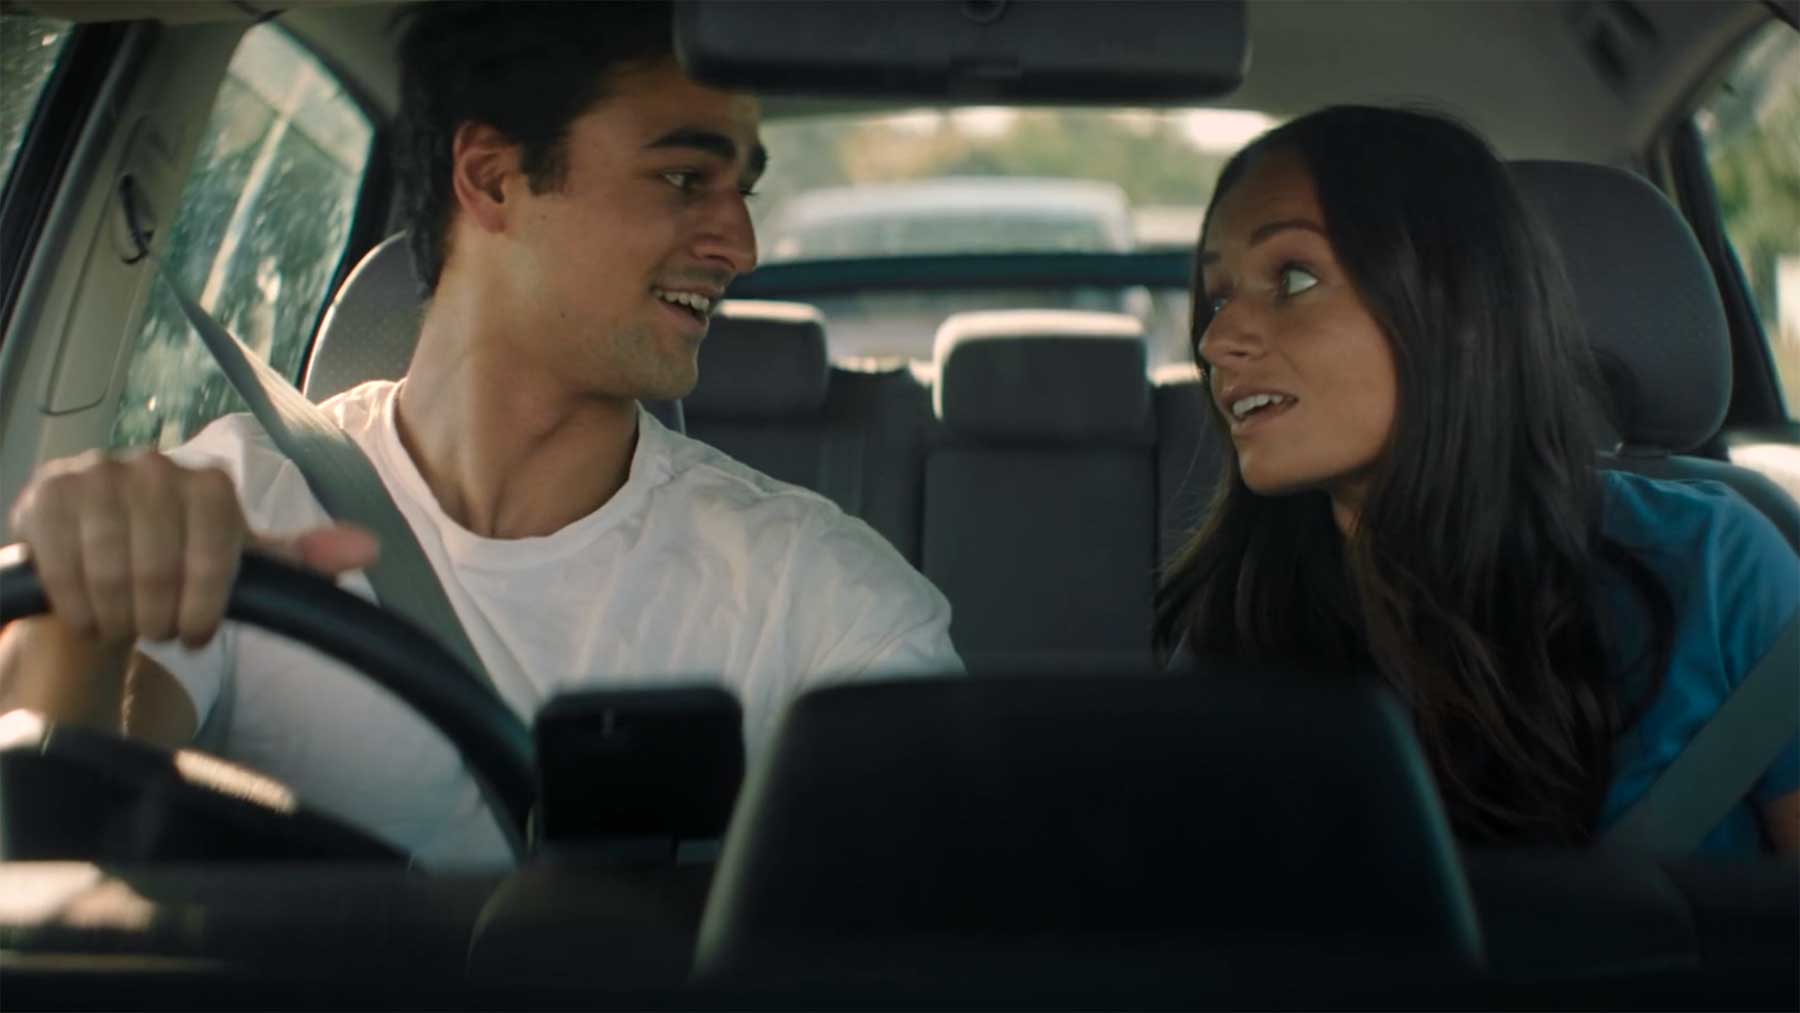 Dieser Kurzfilm spielt komplett in einem Auto